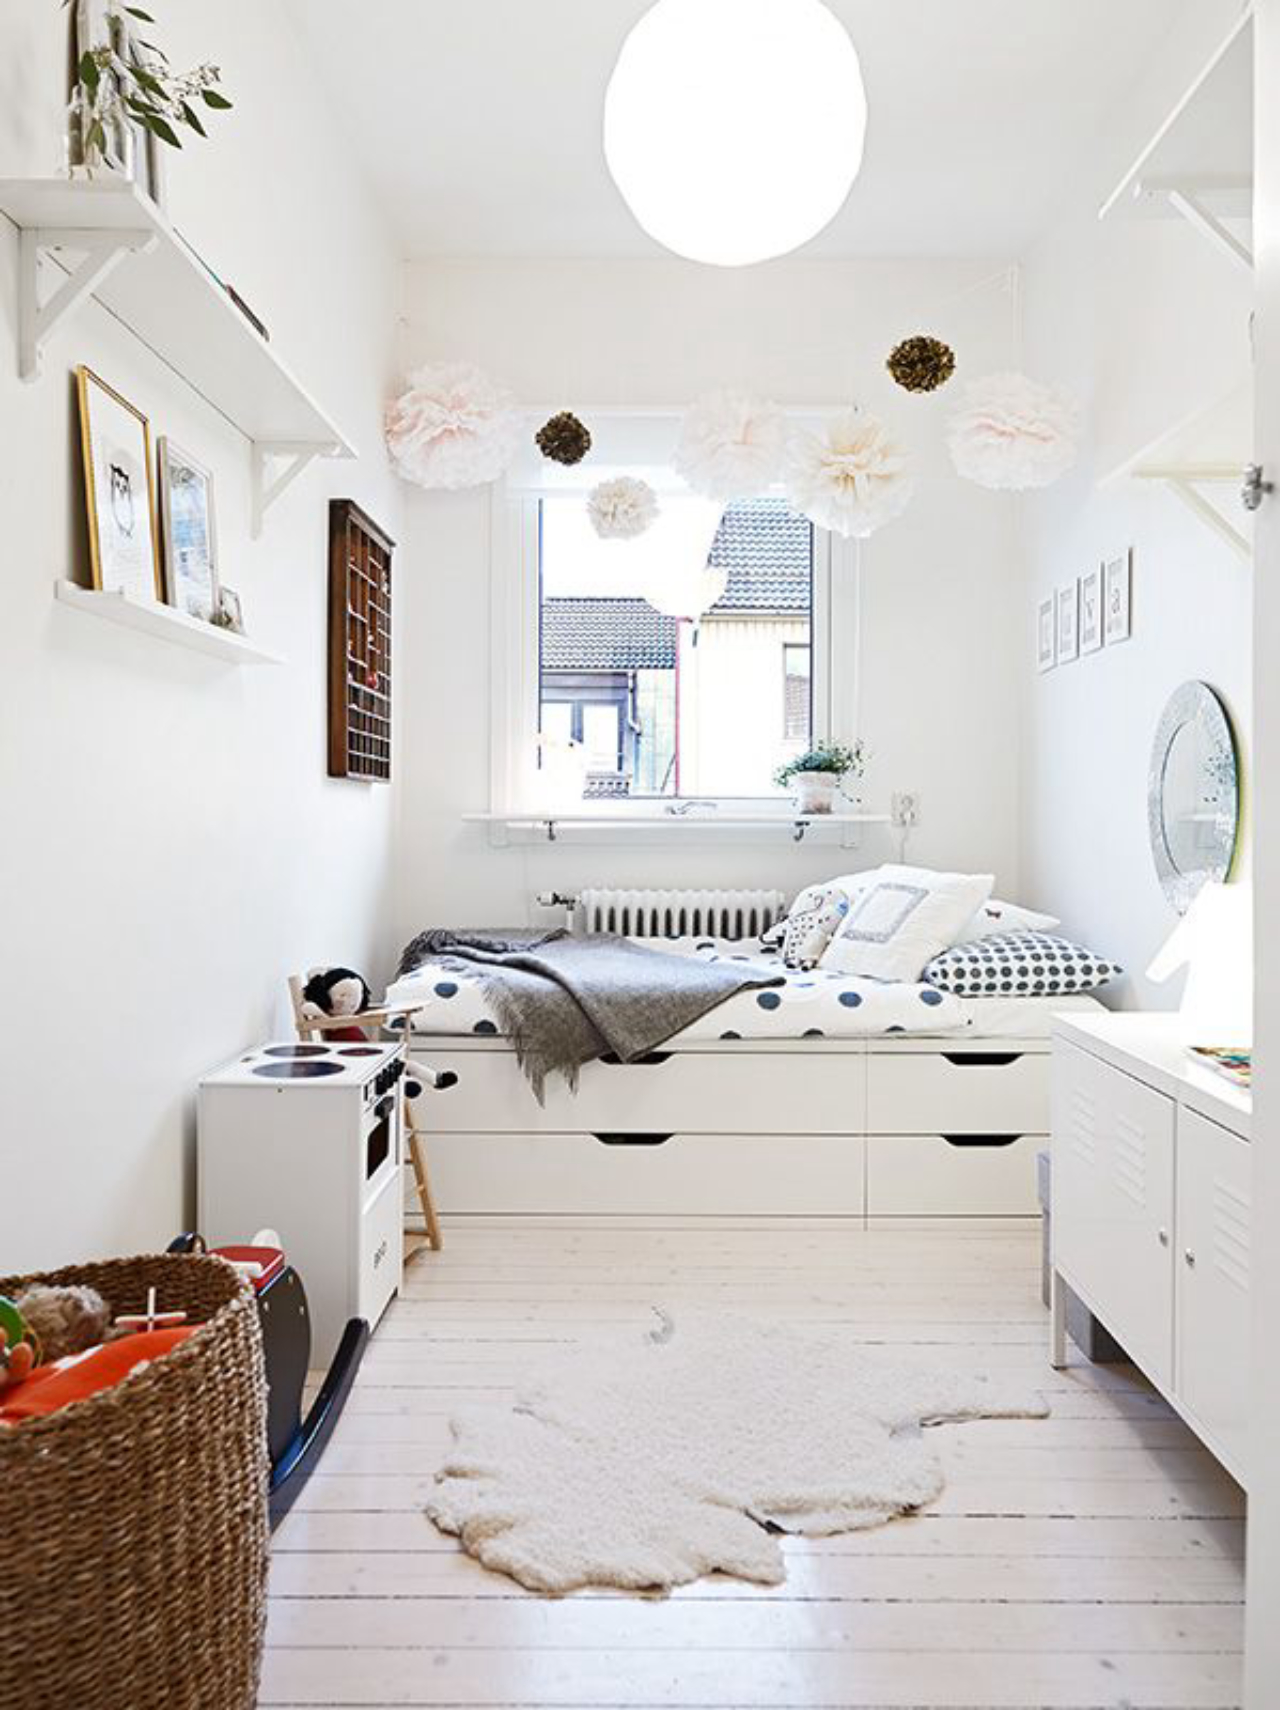 Grandes gavetas embaixo da cama podem guardar cobertores e edredons. / Crédito: Pinterest. 